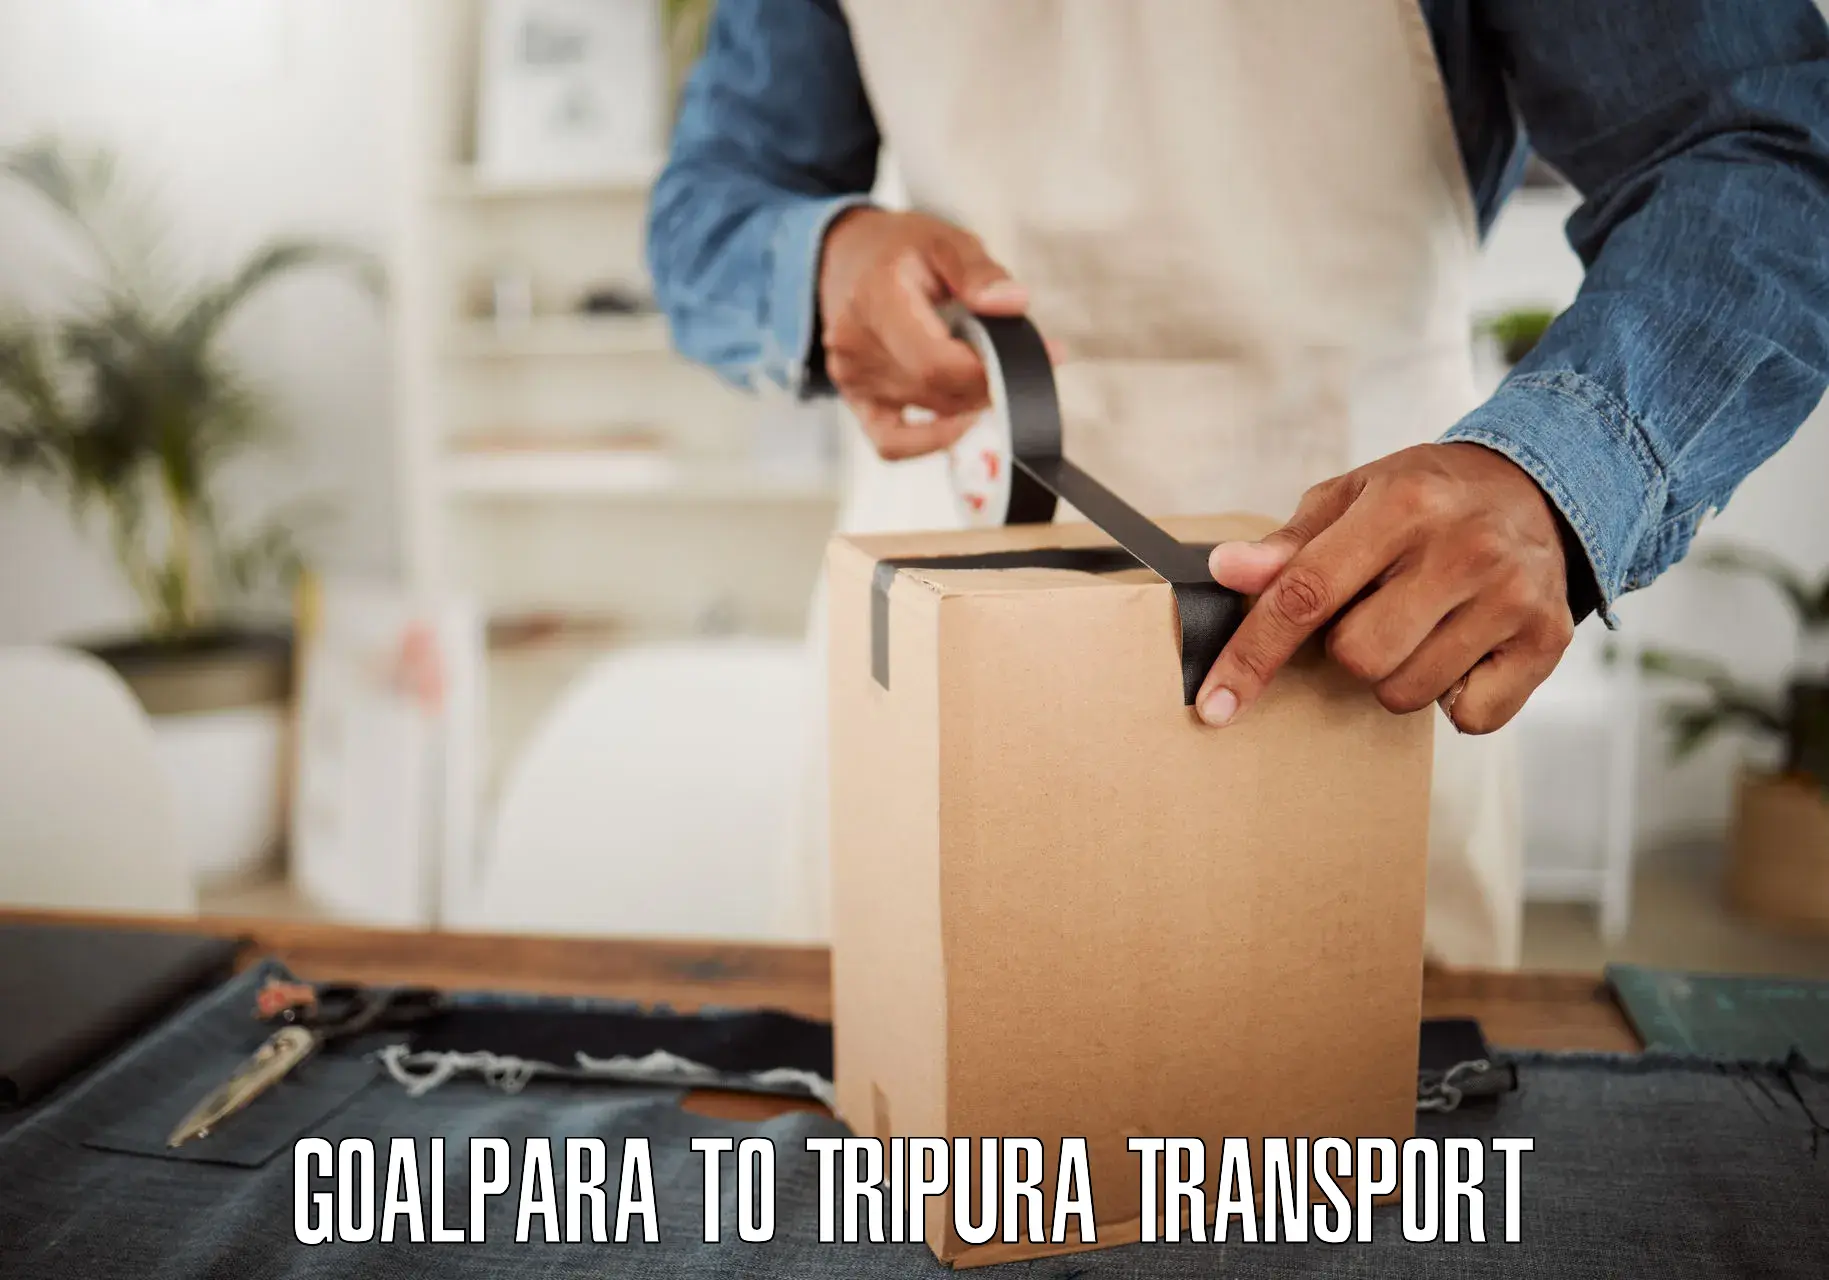 Daily parcel service transport Goalpara to Kailashahar